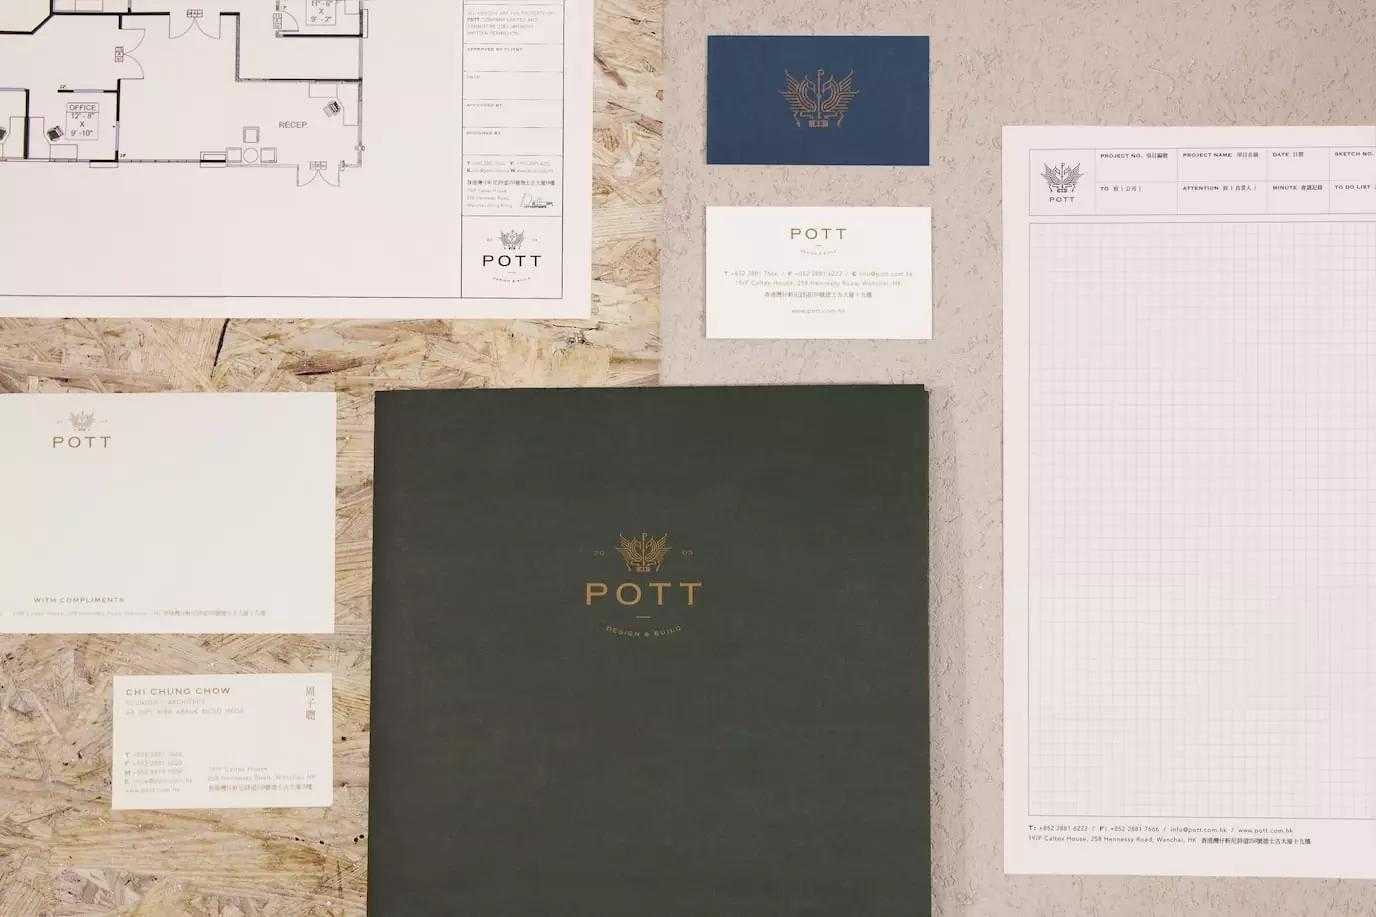 POTT建筑和室内设计公司品牌设计 via:House of Forme